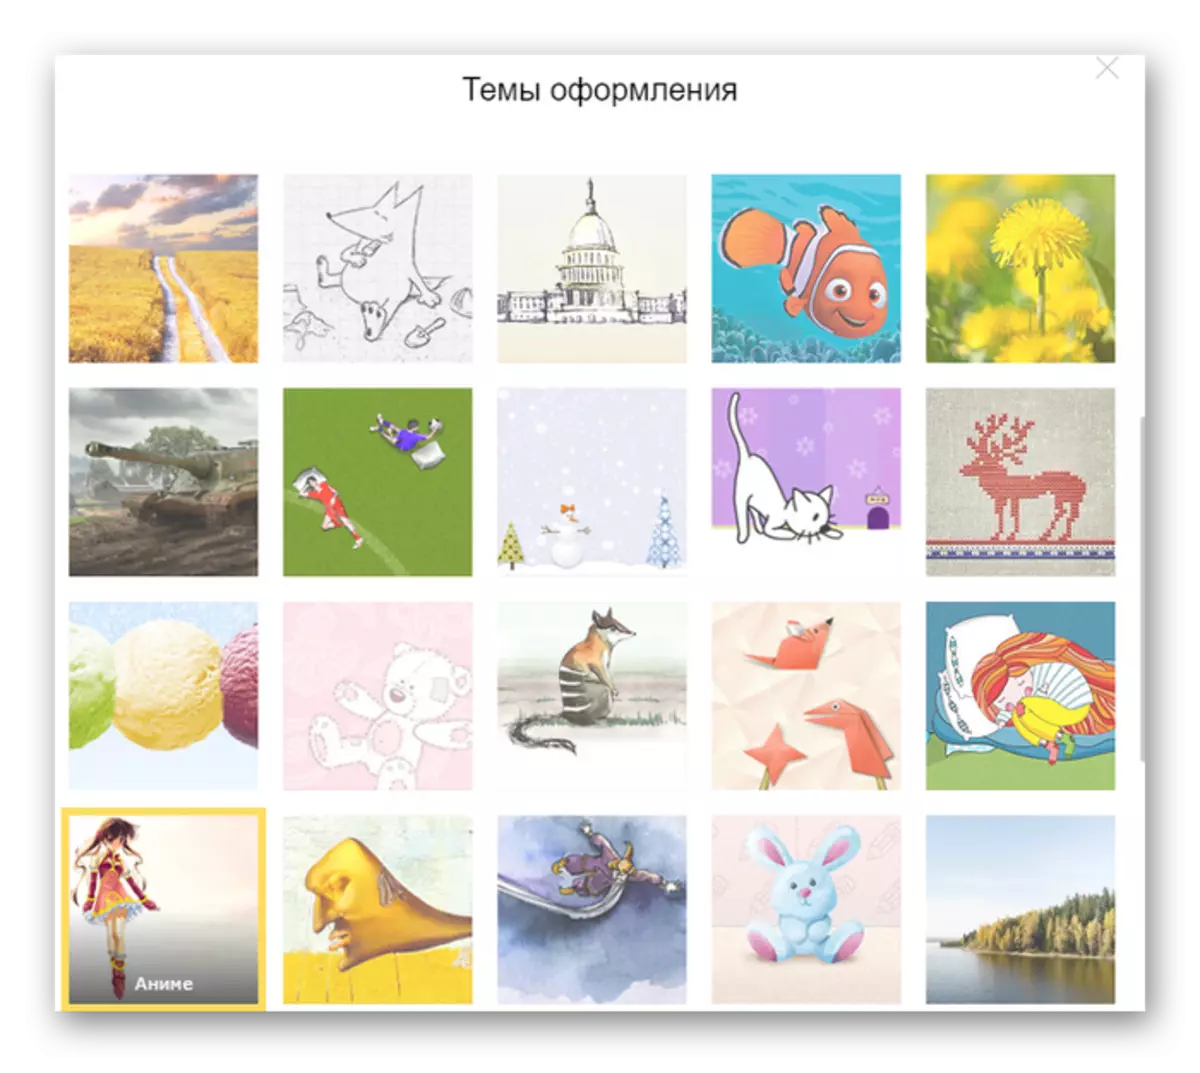 Яндекс почта темалары